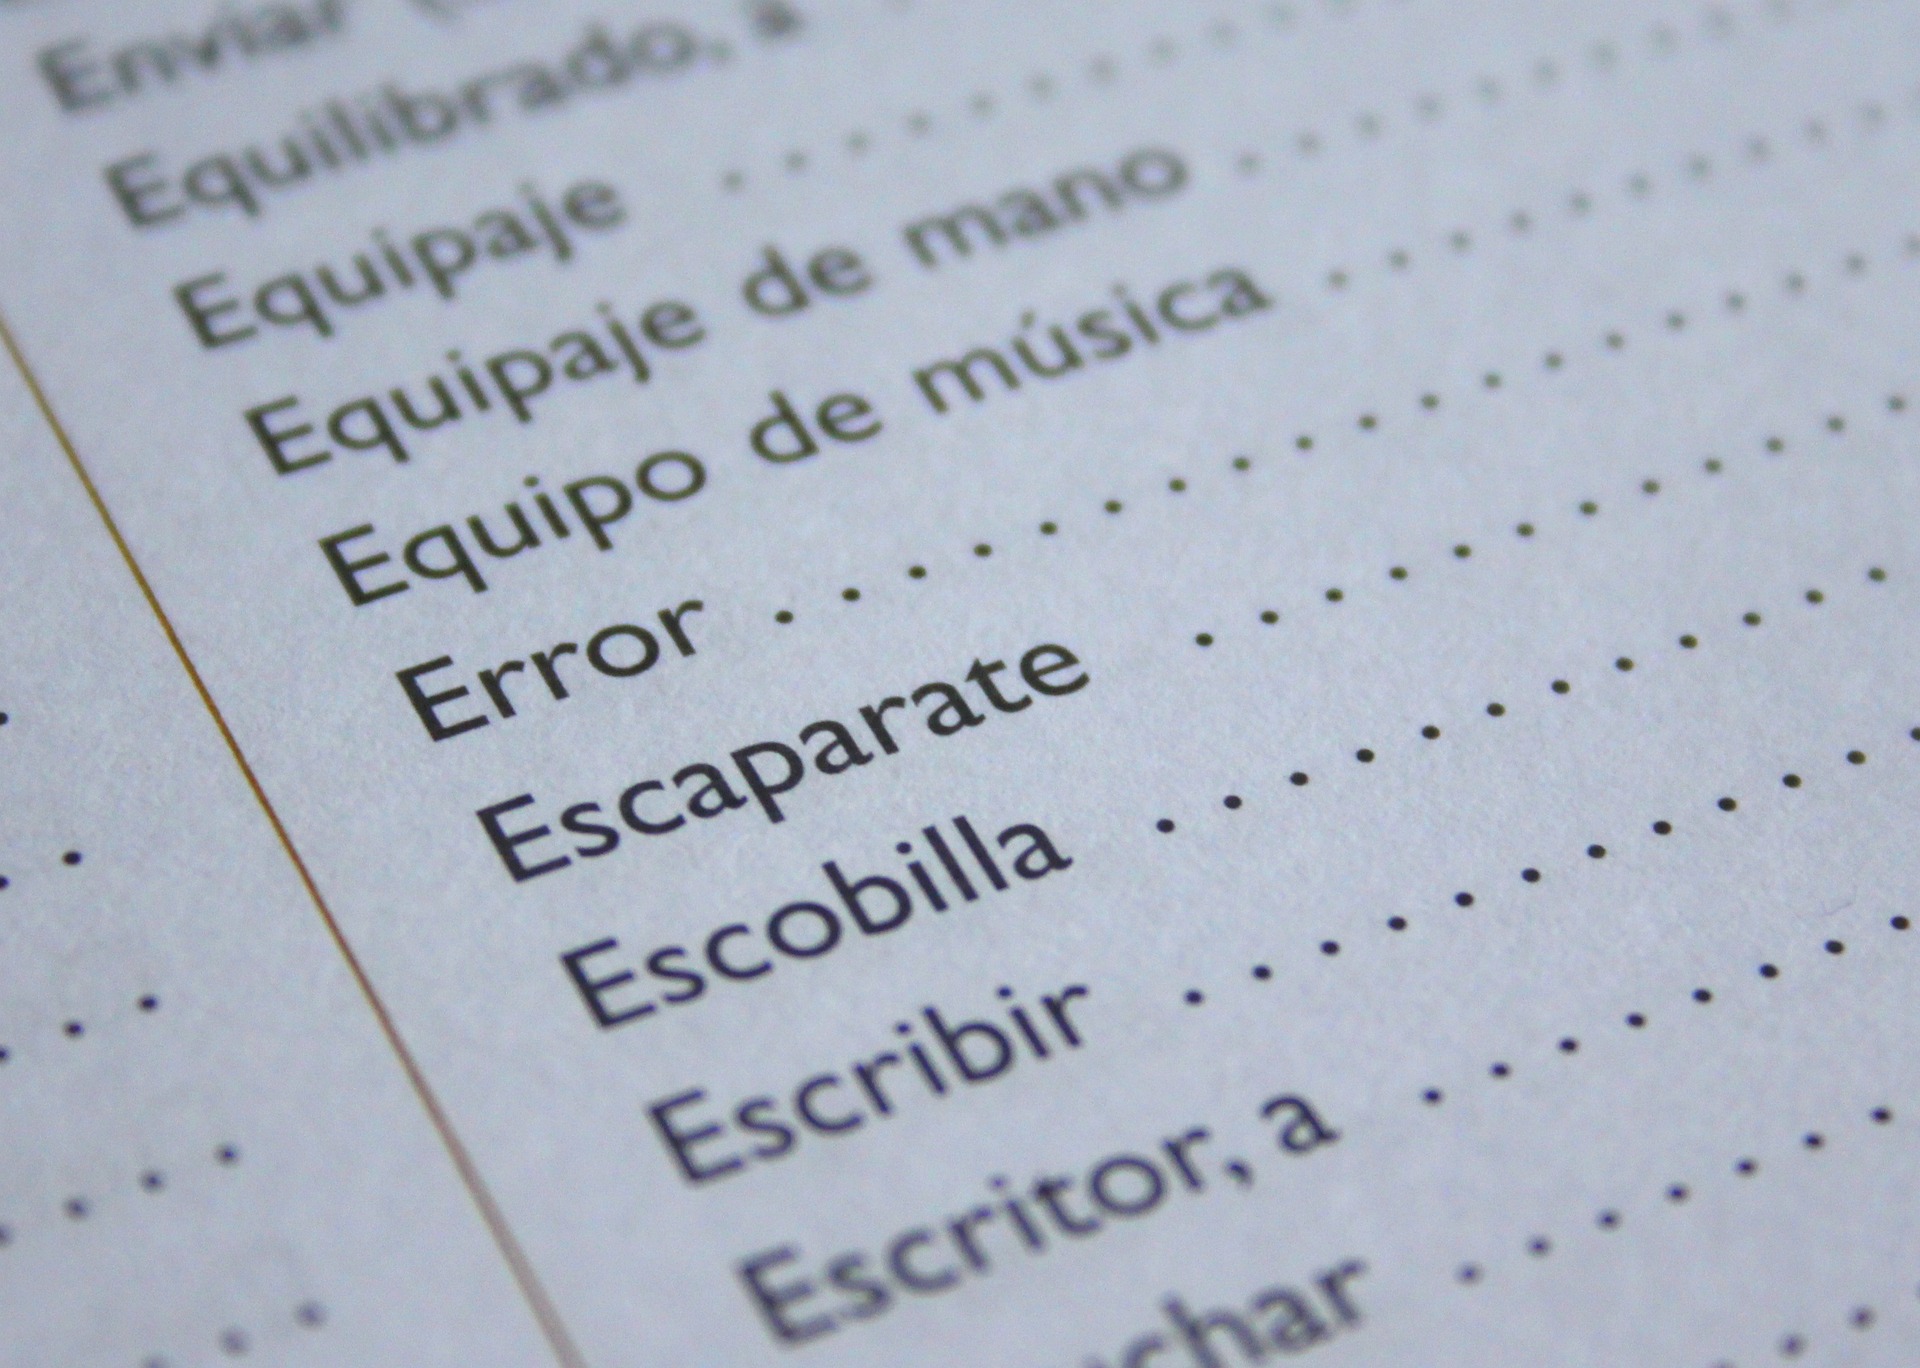 Jak uczyć się języka hiszpańskiego efektywnie?